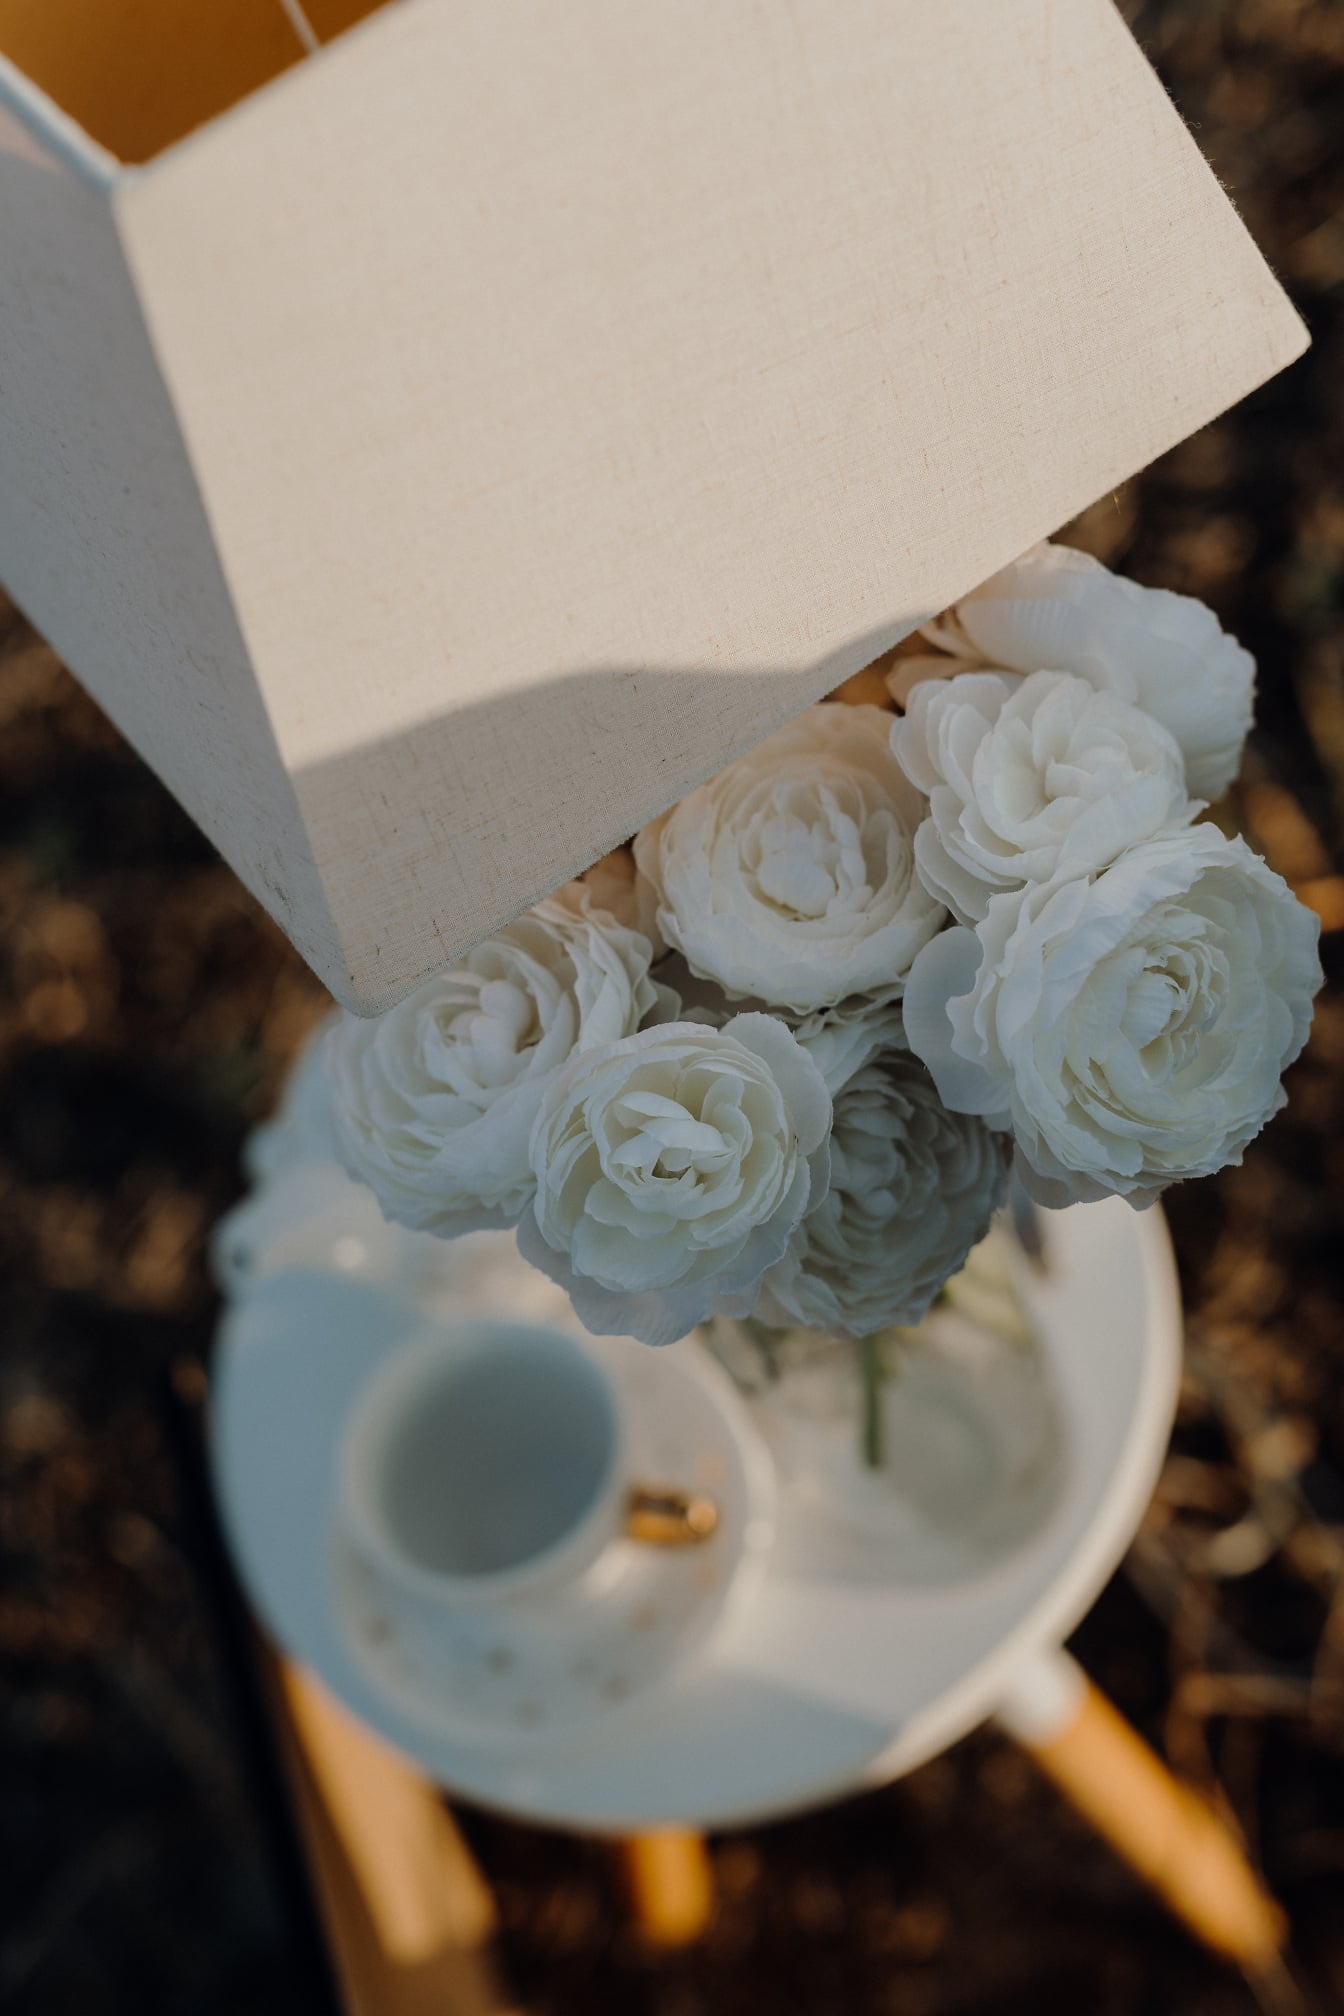 Buket mawar putih di bangku dengan dekorasi lampu elegan